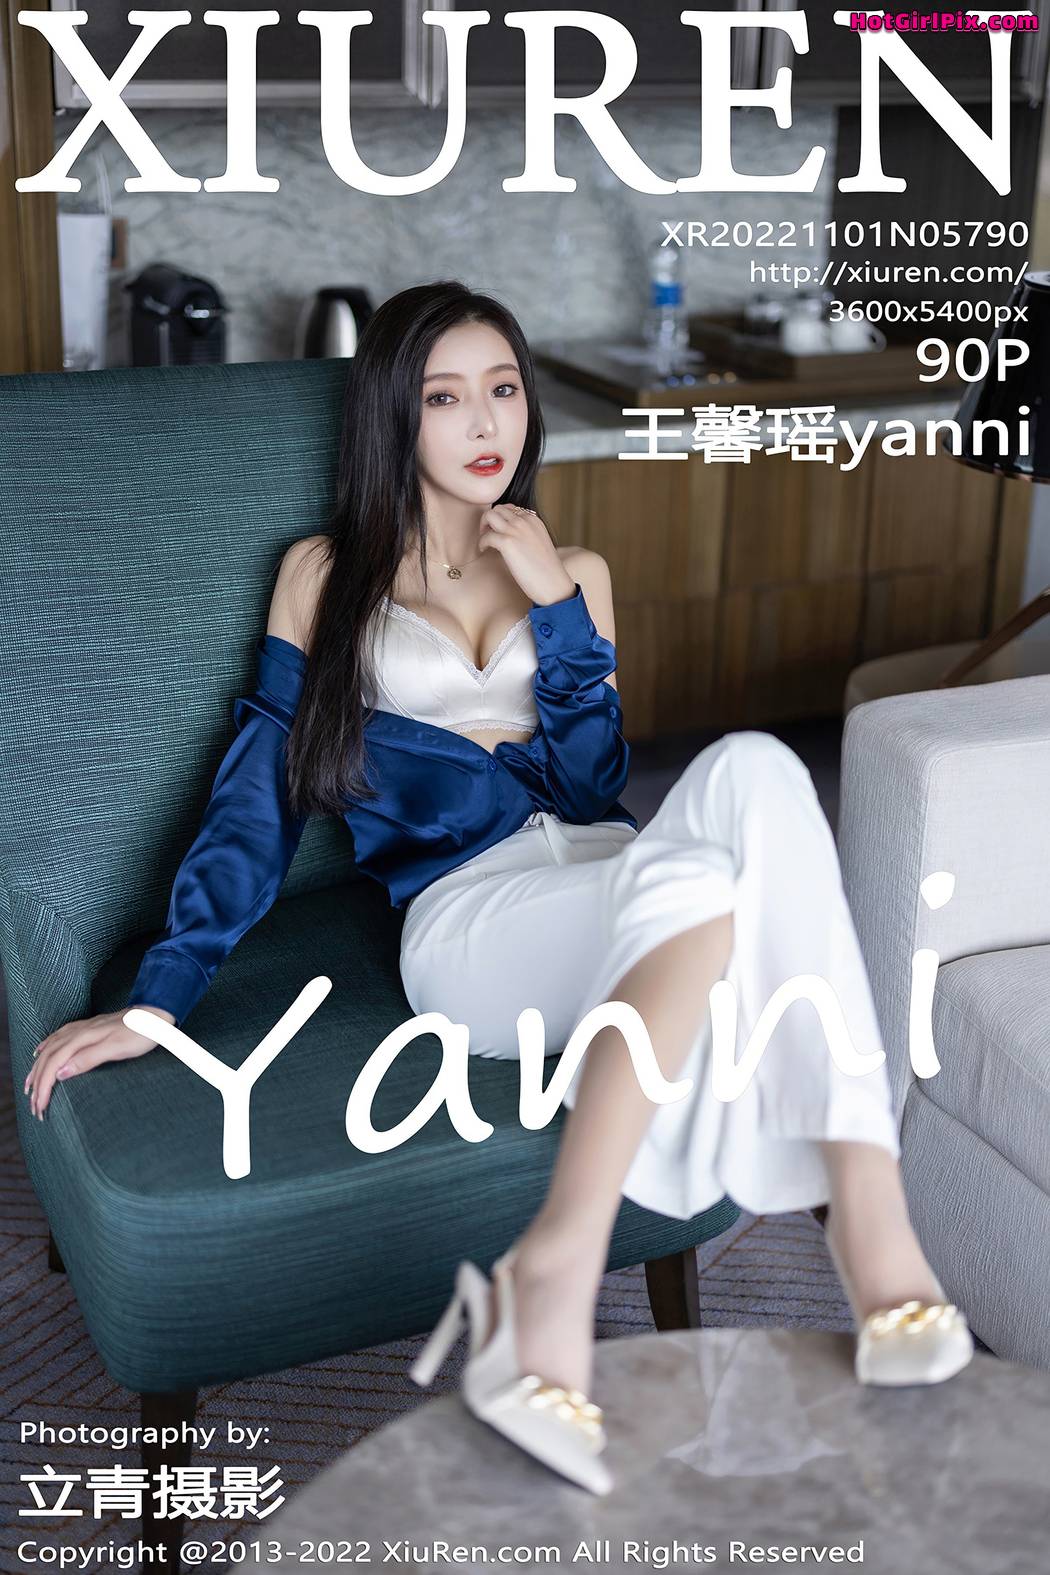 [XIUREN] No.5790 Wang Xin Yao 王馨瑶yanni Cover Photo